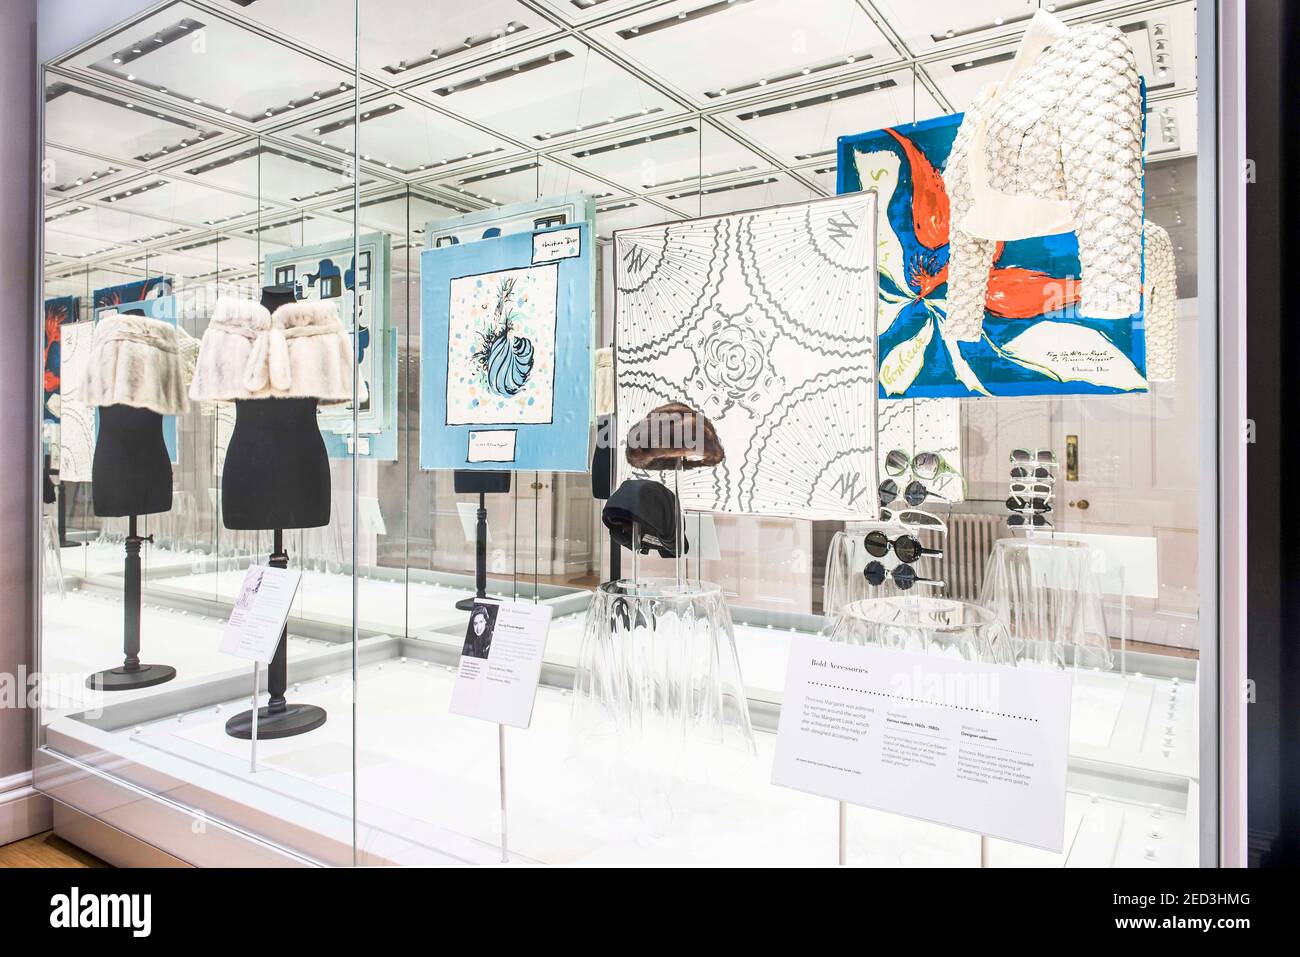 Accessoires de mode portés par la princesse Margaret, y compris une veste boléro ornée de perles et des lunettes de soleil, exposés dans le cadre de l'exposition de mode refaite à Kensington Palace, Londres, 2016. Banque D'Images